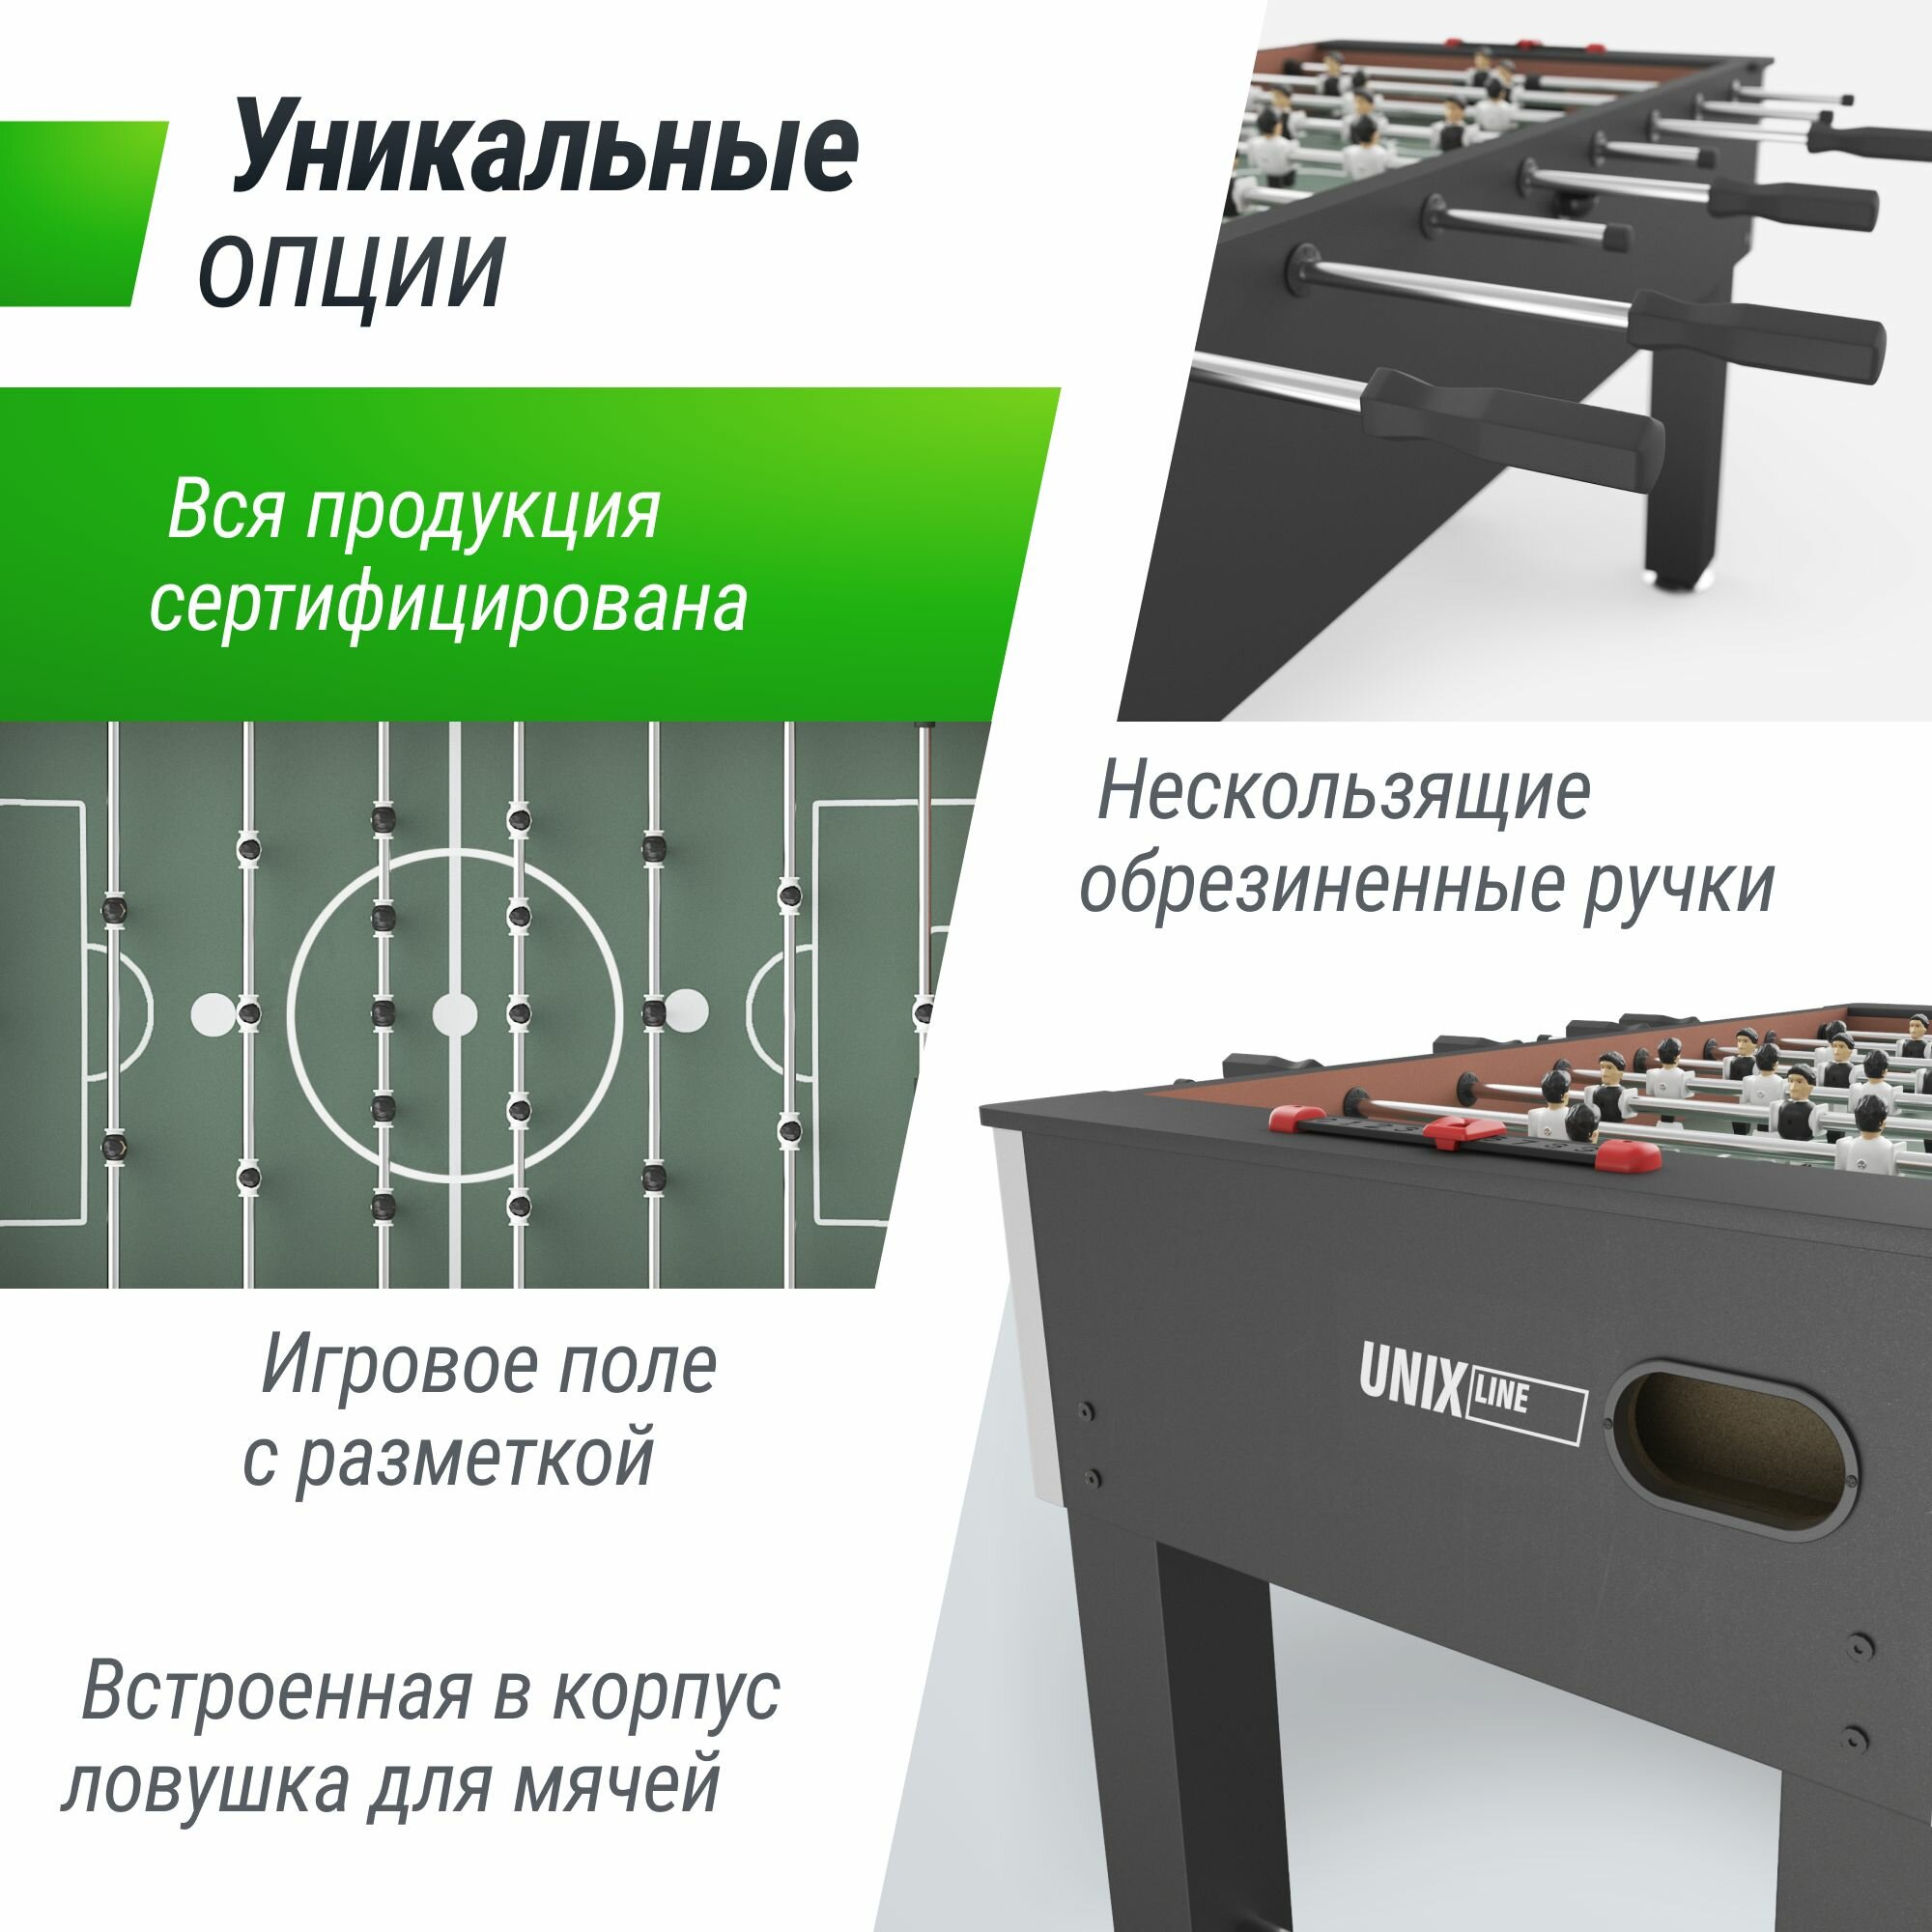 Игровой стол UNIX Line Футбол Кикер 140х74 cм, настольная игра для детей и взрослых, большой напольный футбол UNIXLINE